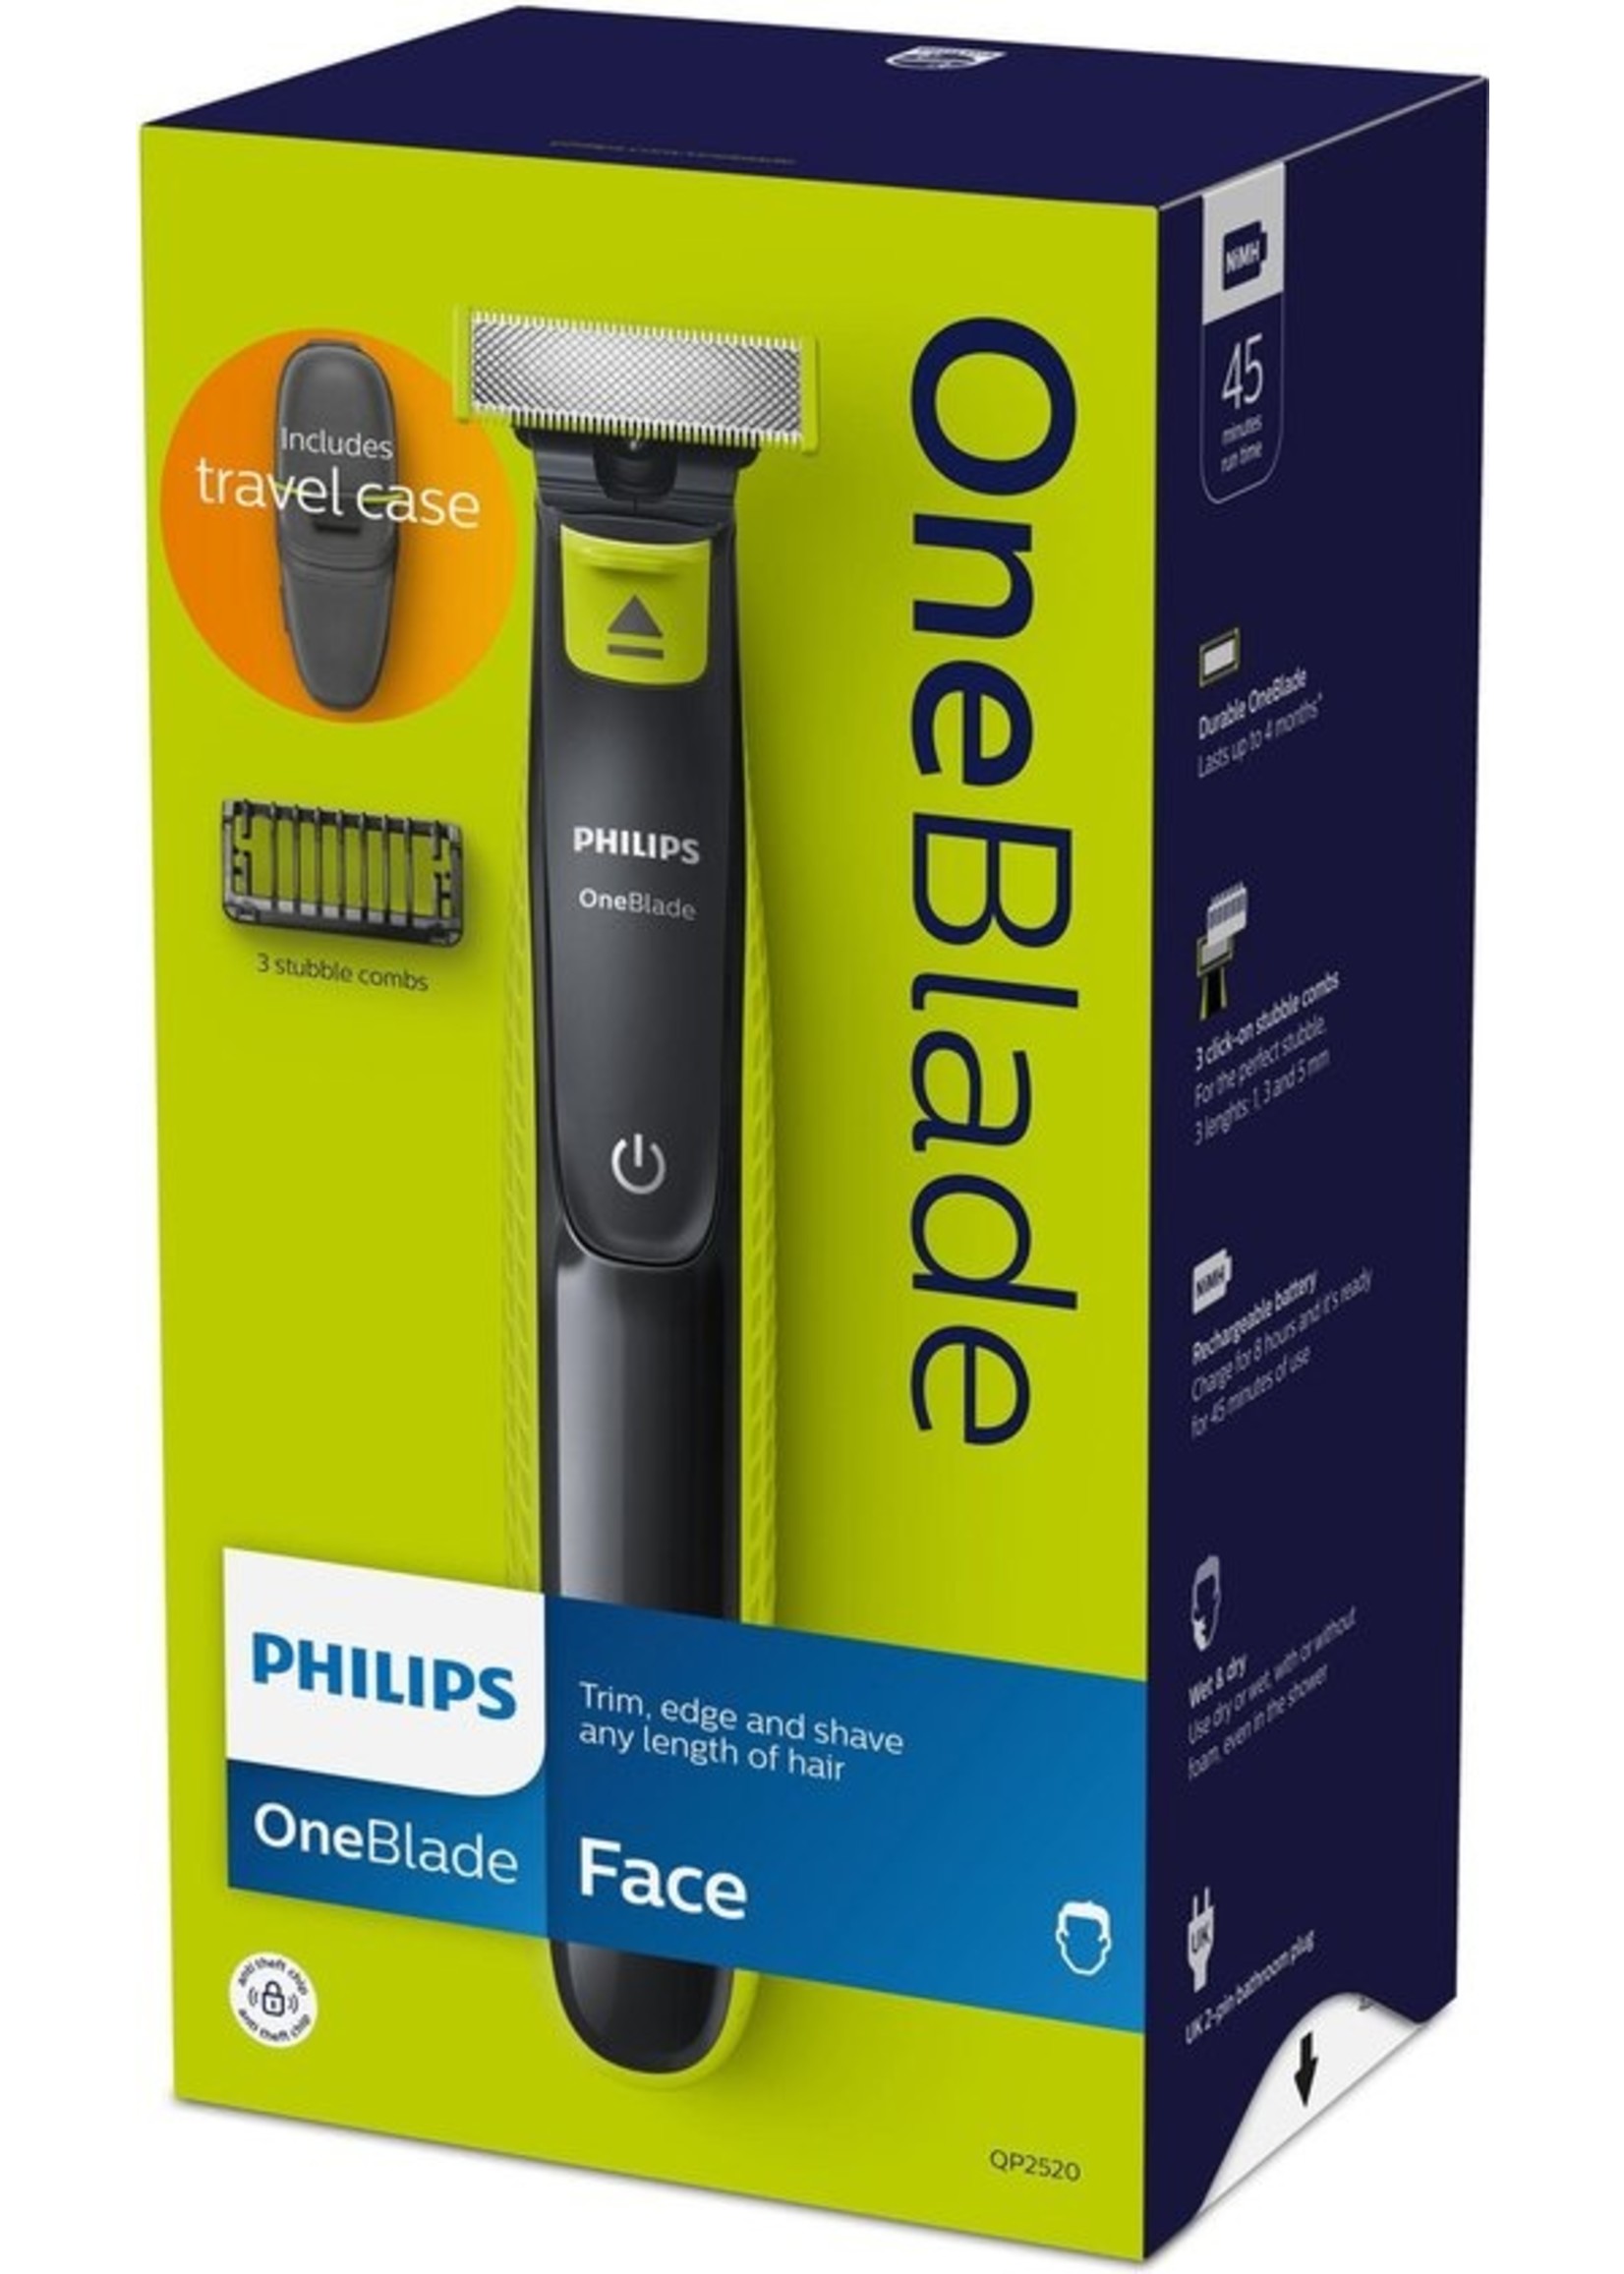 Philips Philips Norelco OneBlade QP2520/65 baardtrimmer Nat en droog Houtskool, Limoen